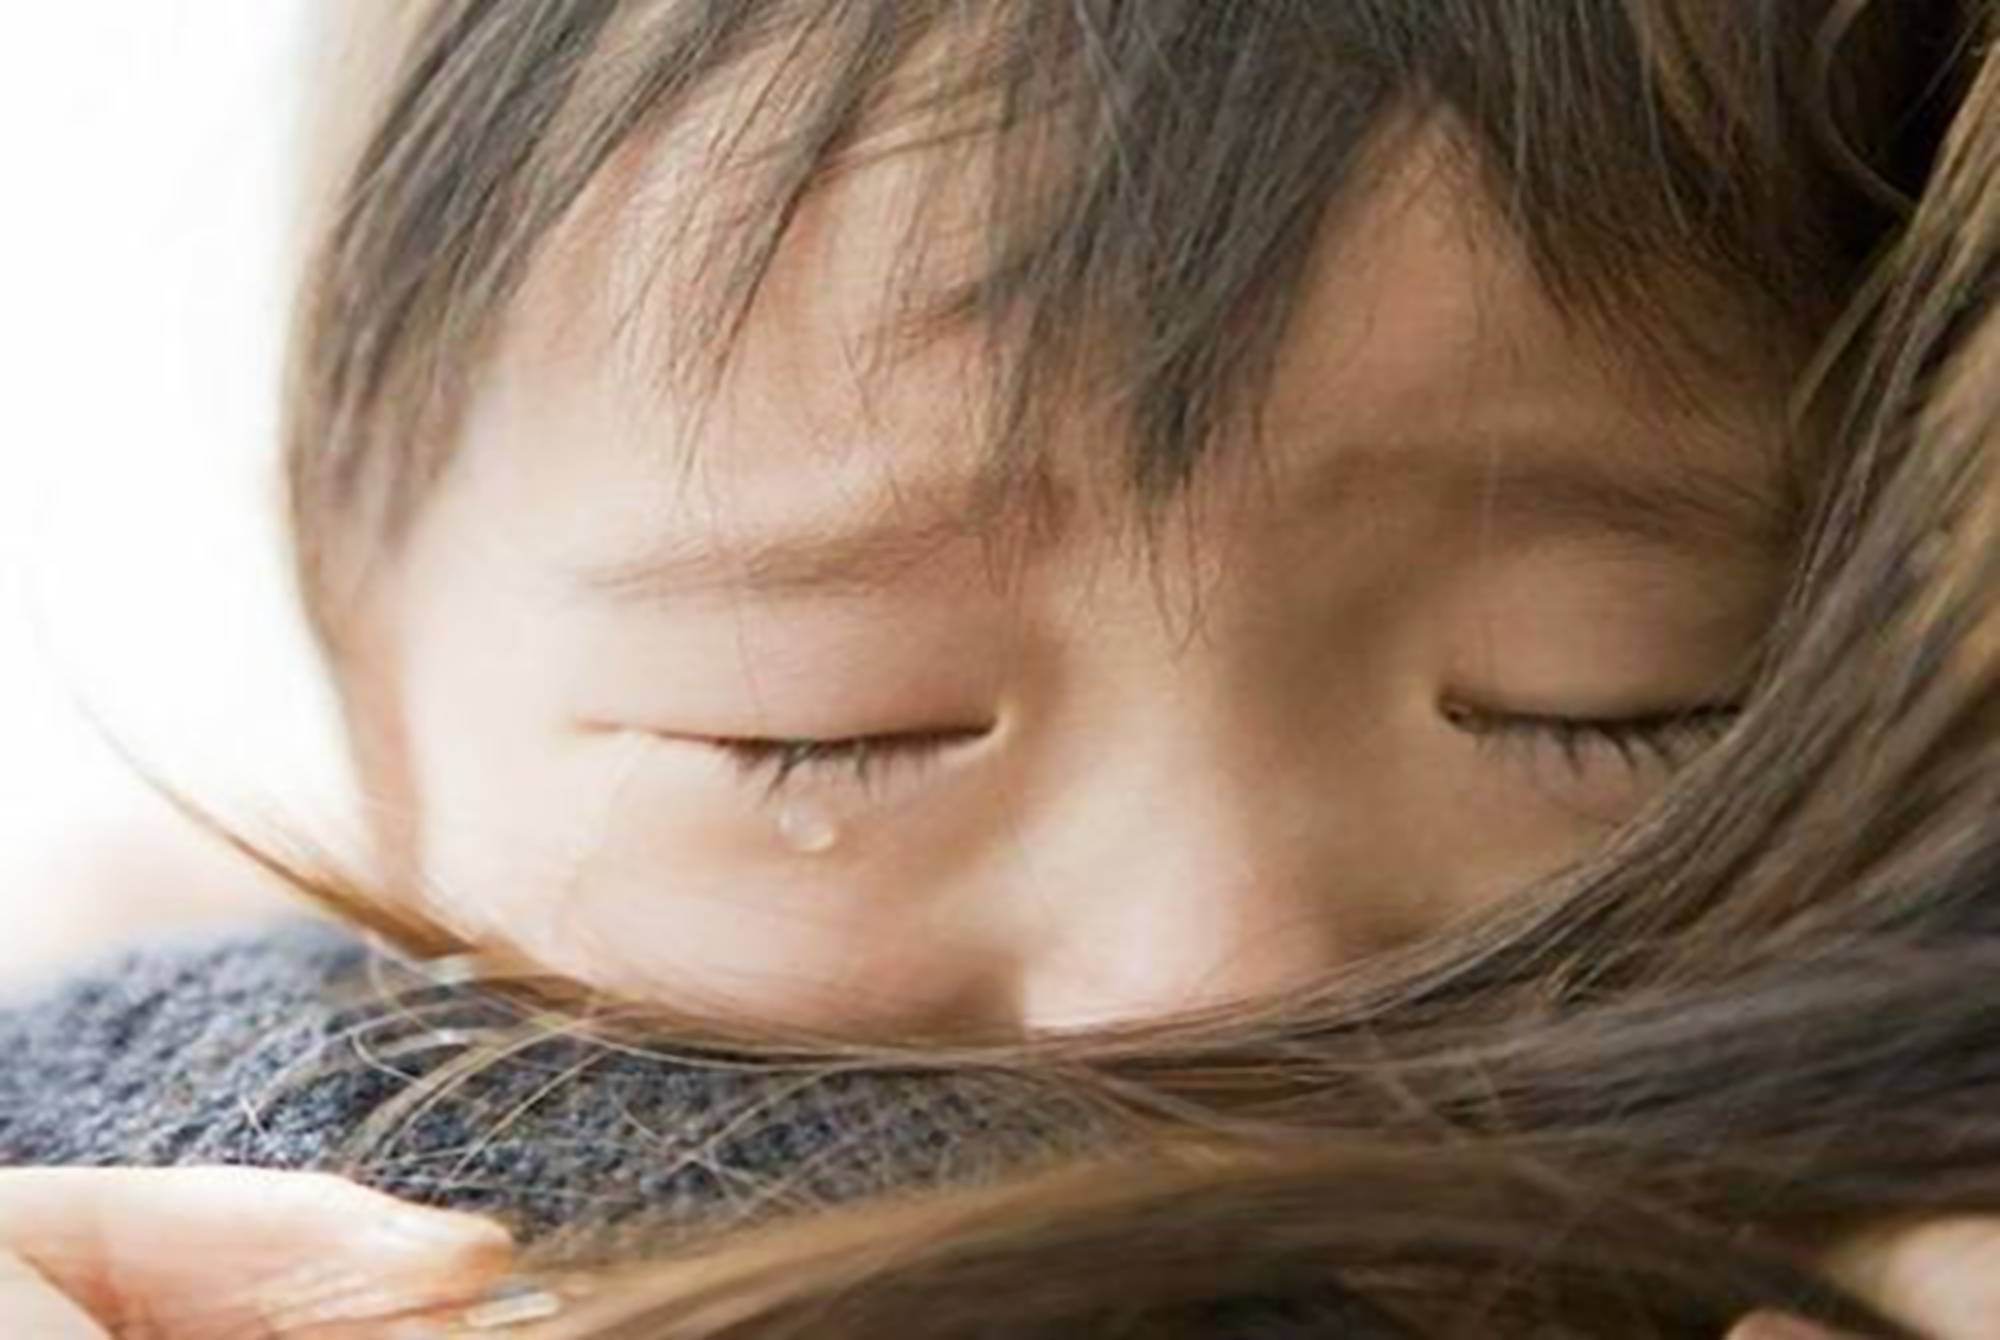 原创哭声免疫法毁孩子,父母需读懂孩子一哭求抱抱的依恋心理